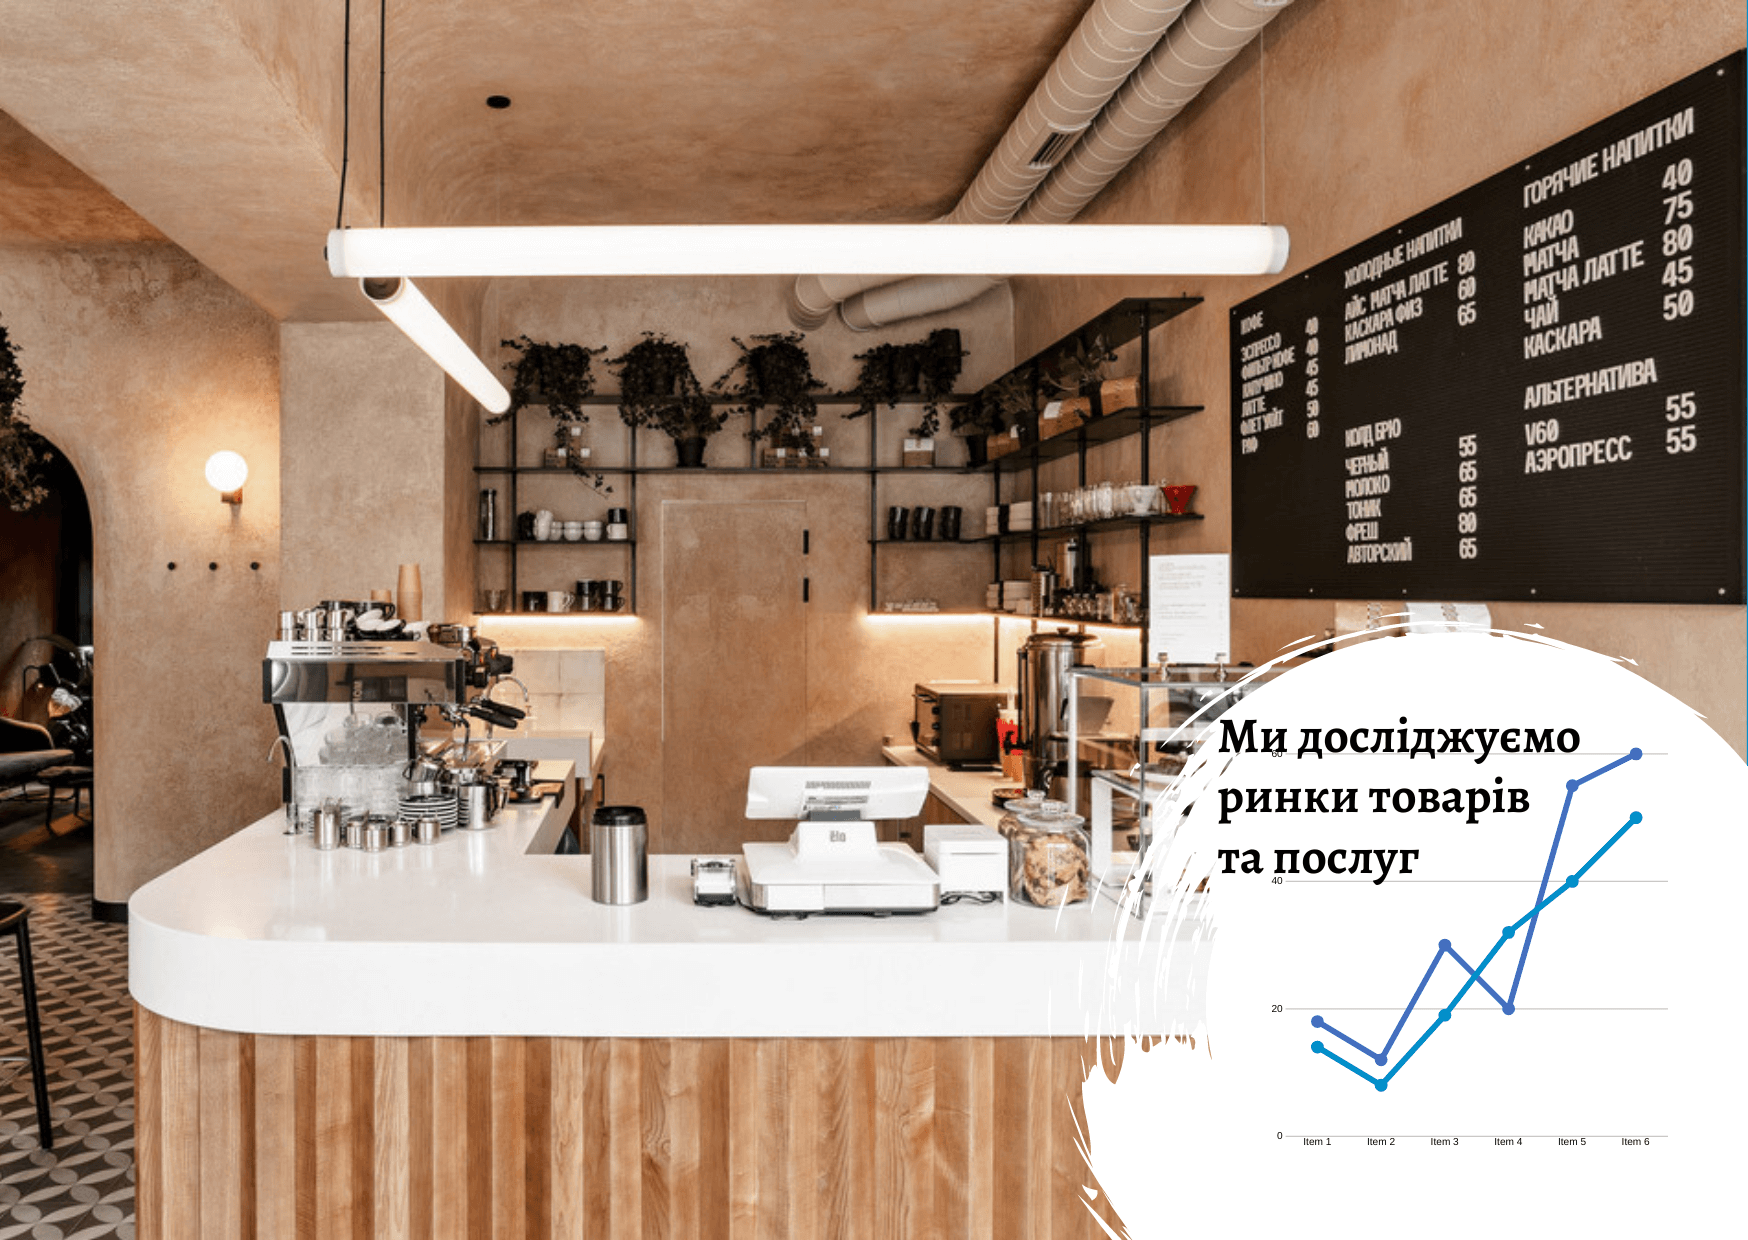 Kyiv coffee shop market: development despite the war